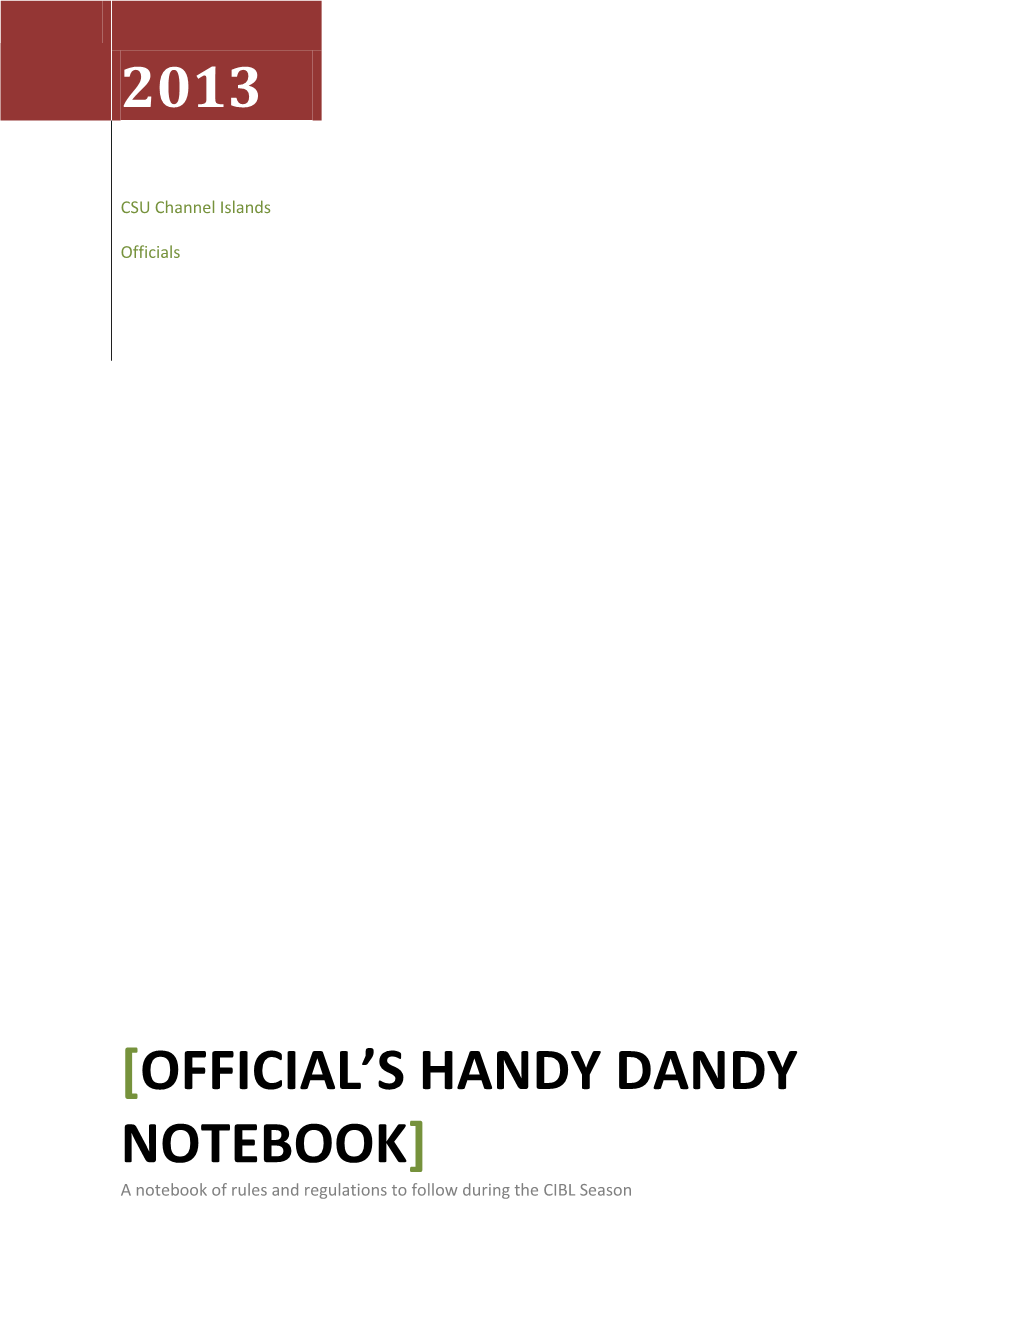 Official's Handy Dandy Notebook